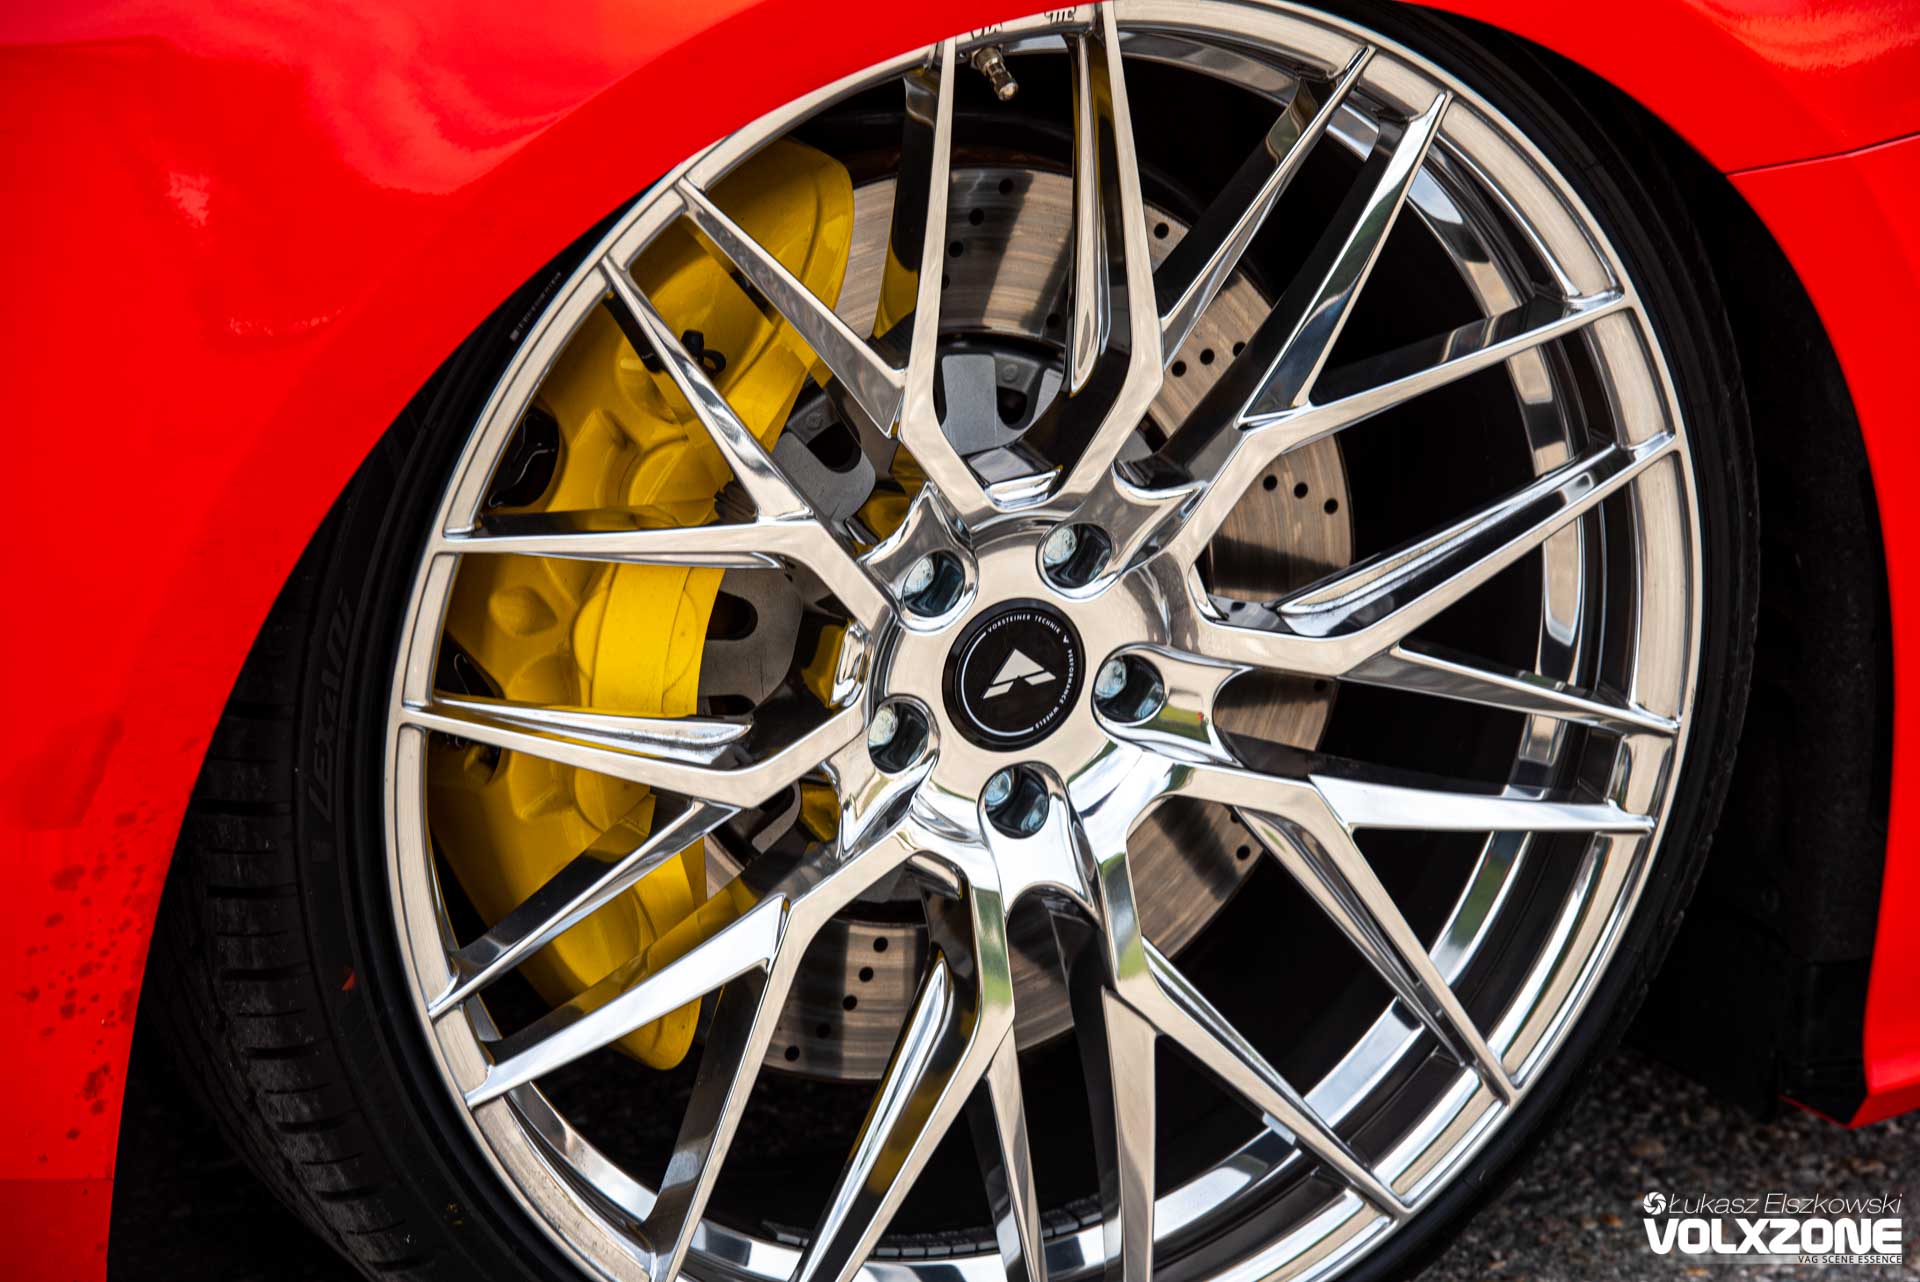 gepfeffert.com - The Original - Wir freuen uns aufs fertige Ergebnis… Unser Audi  A6 C8 hat eine Sonderfarbe (Porsche Ultraviolett) als Folie by  GEPFEFFERT/FRANKFURT @camtec_design_tuning bekommen. Bilder und Video  folgen. ——————————————————————— Fahrwerk